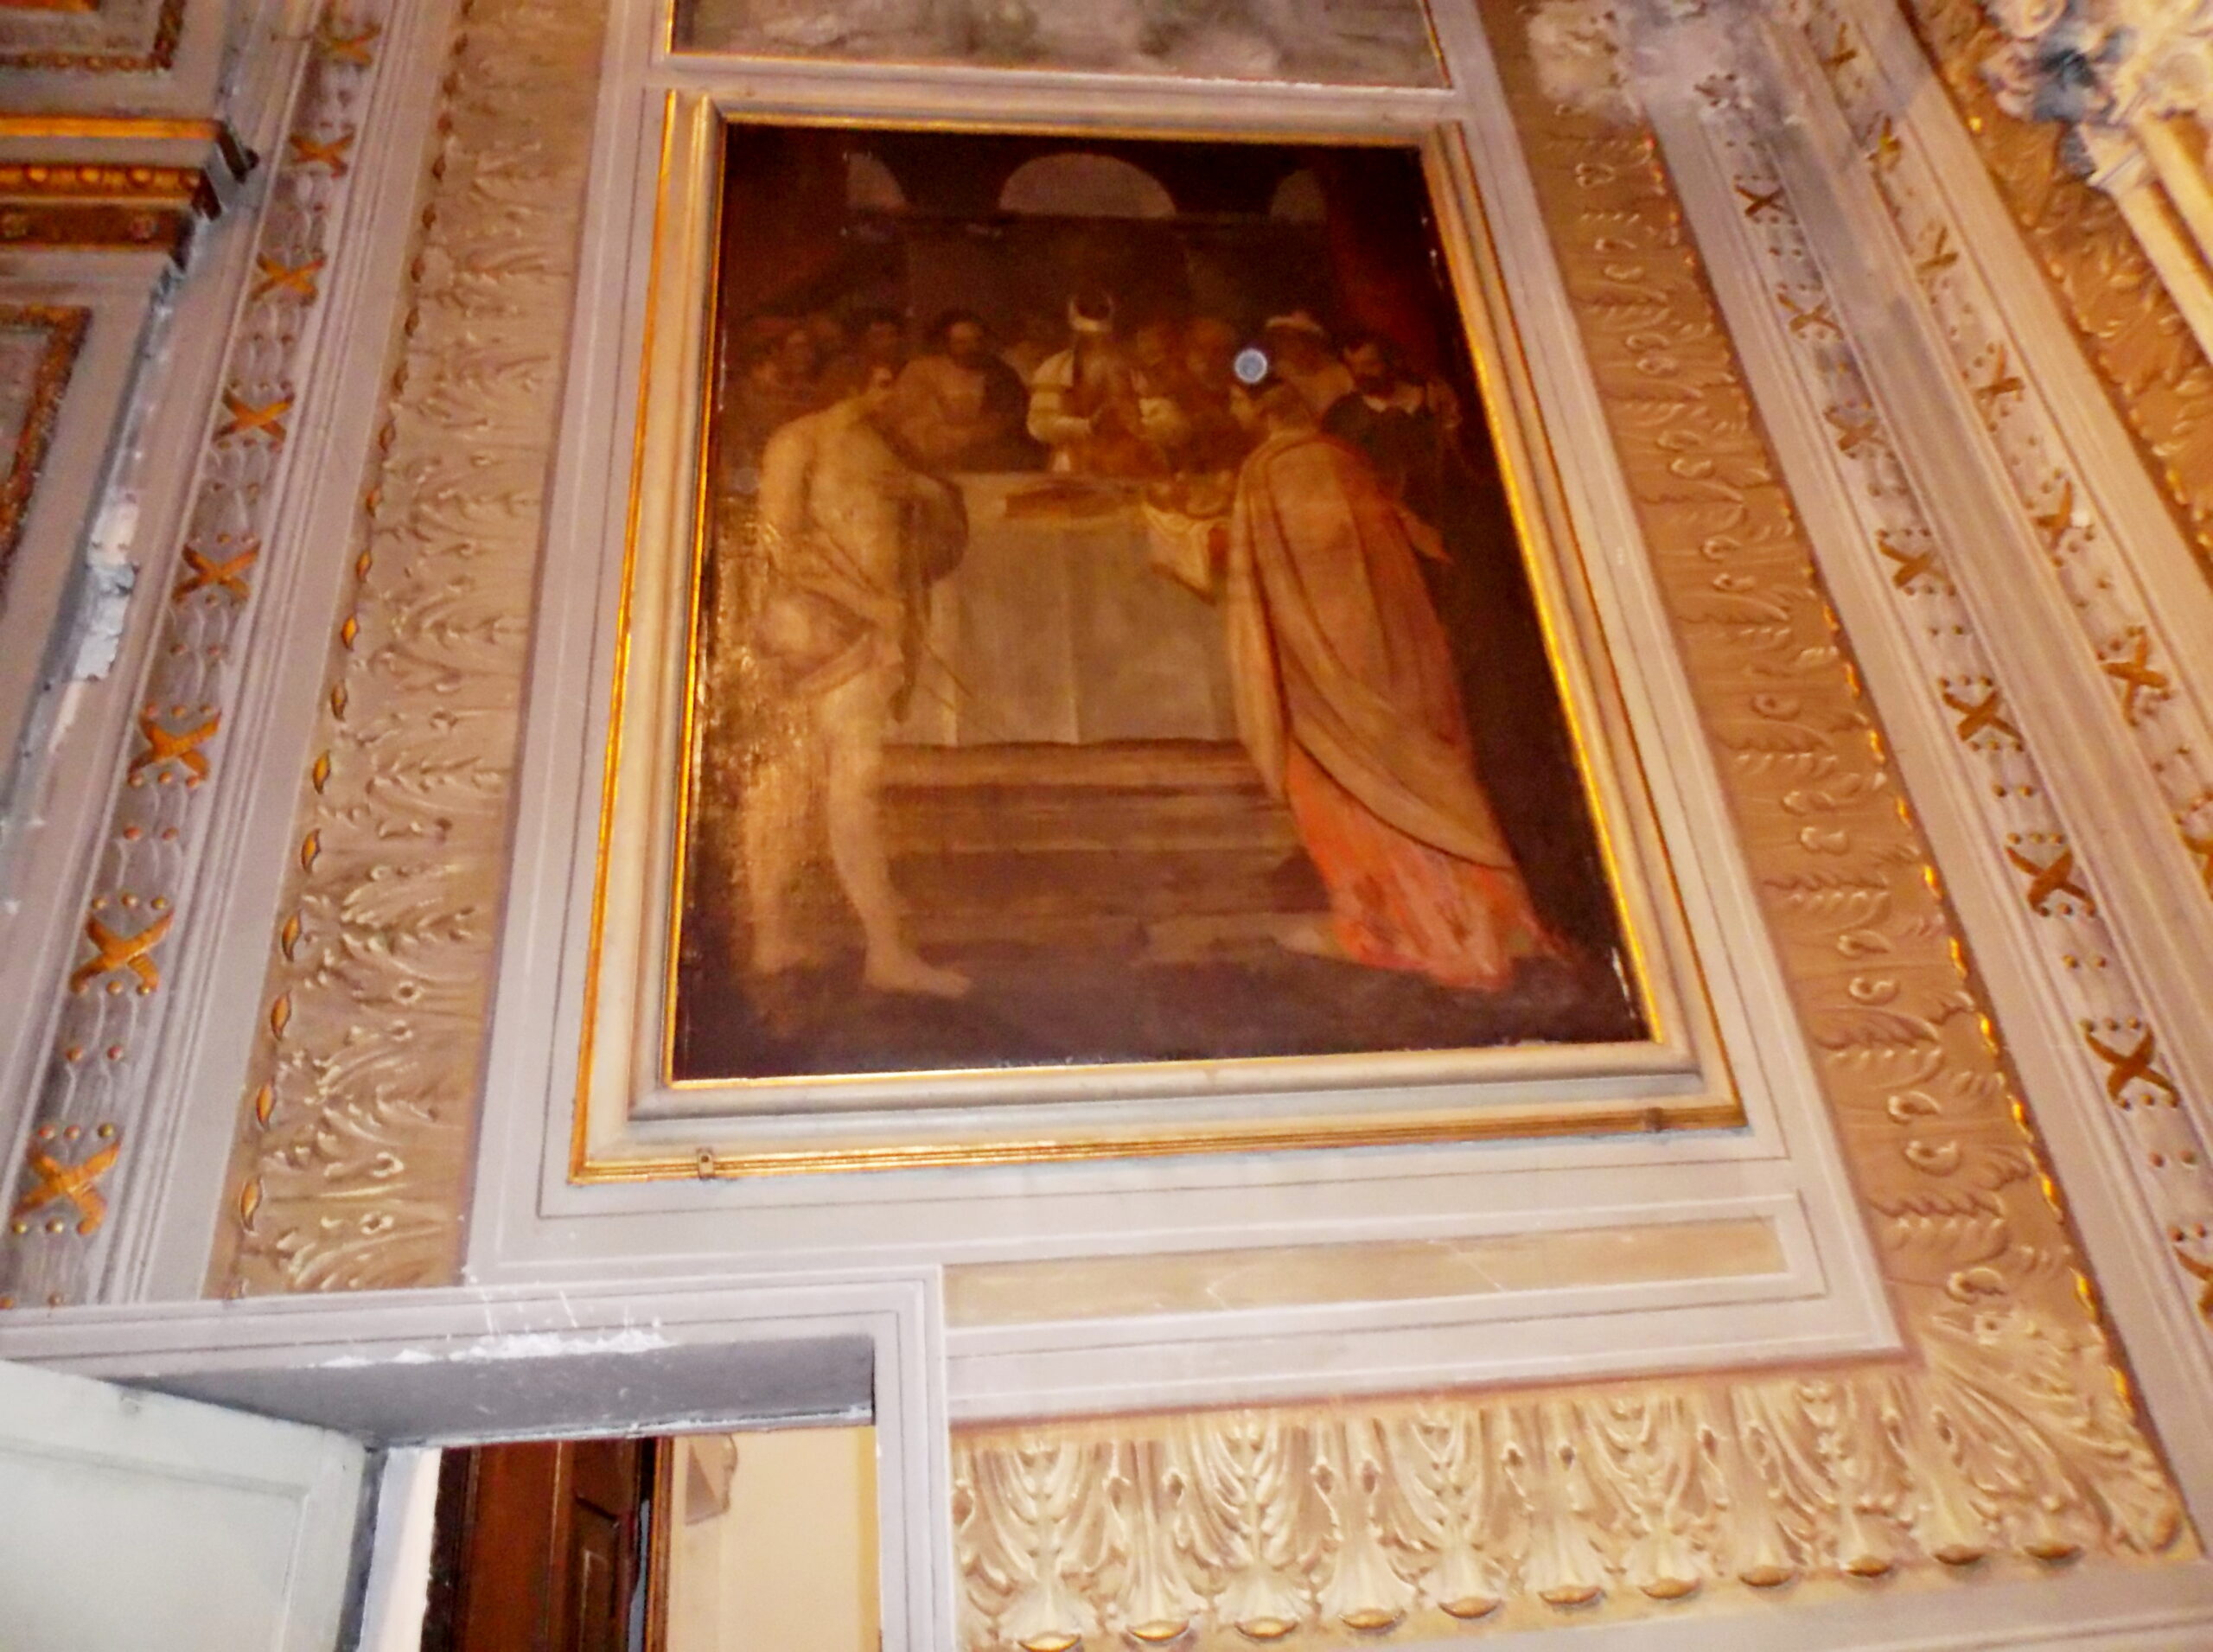 Collegiata: La “strana presenza” nel dipinto “Presentazione di Gesù al Tempio”